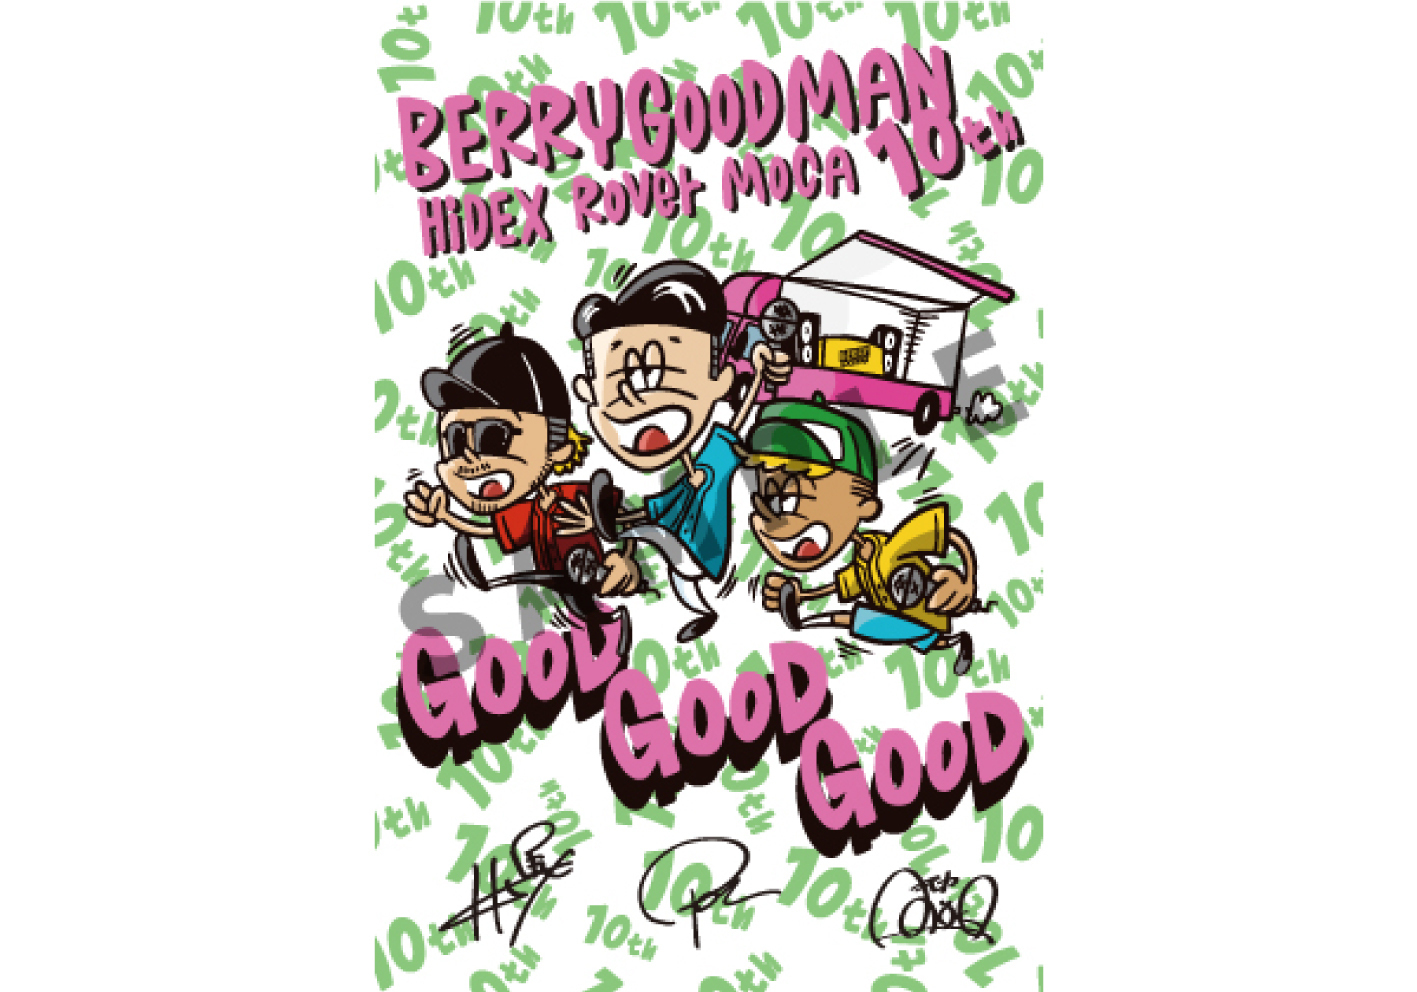 ベリーグットマン10周年を記念したベスト盤「GOOD GOOD GOOD」の特設 